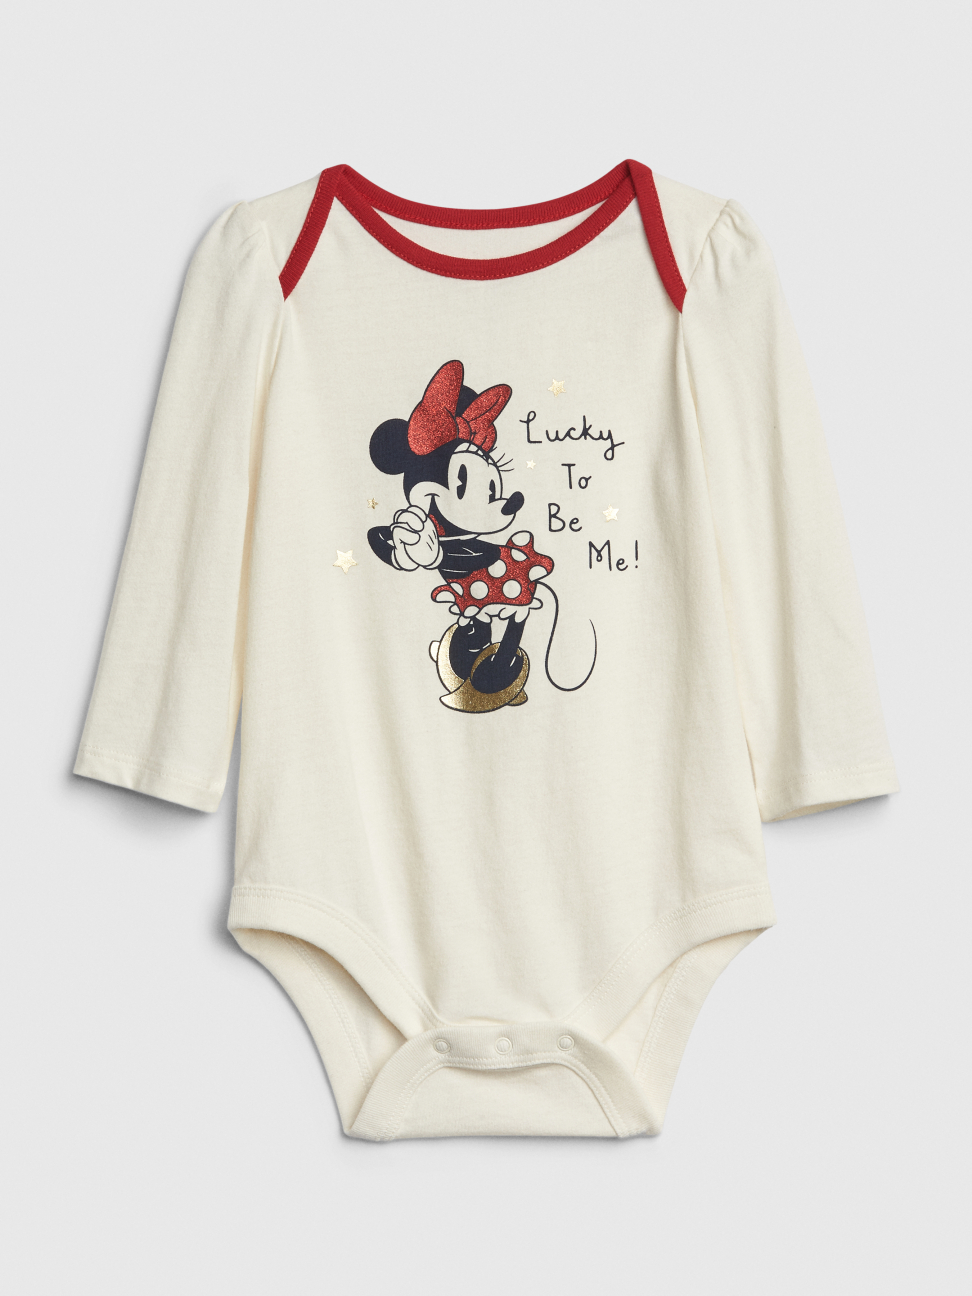 嬰兒裝|Gap x Disney迪士尼聯名 米妮搭肩圓領長袖包屁衣-象牙色